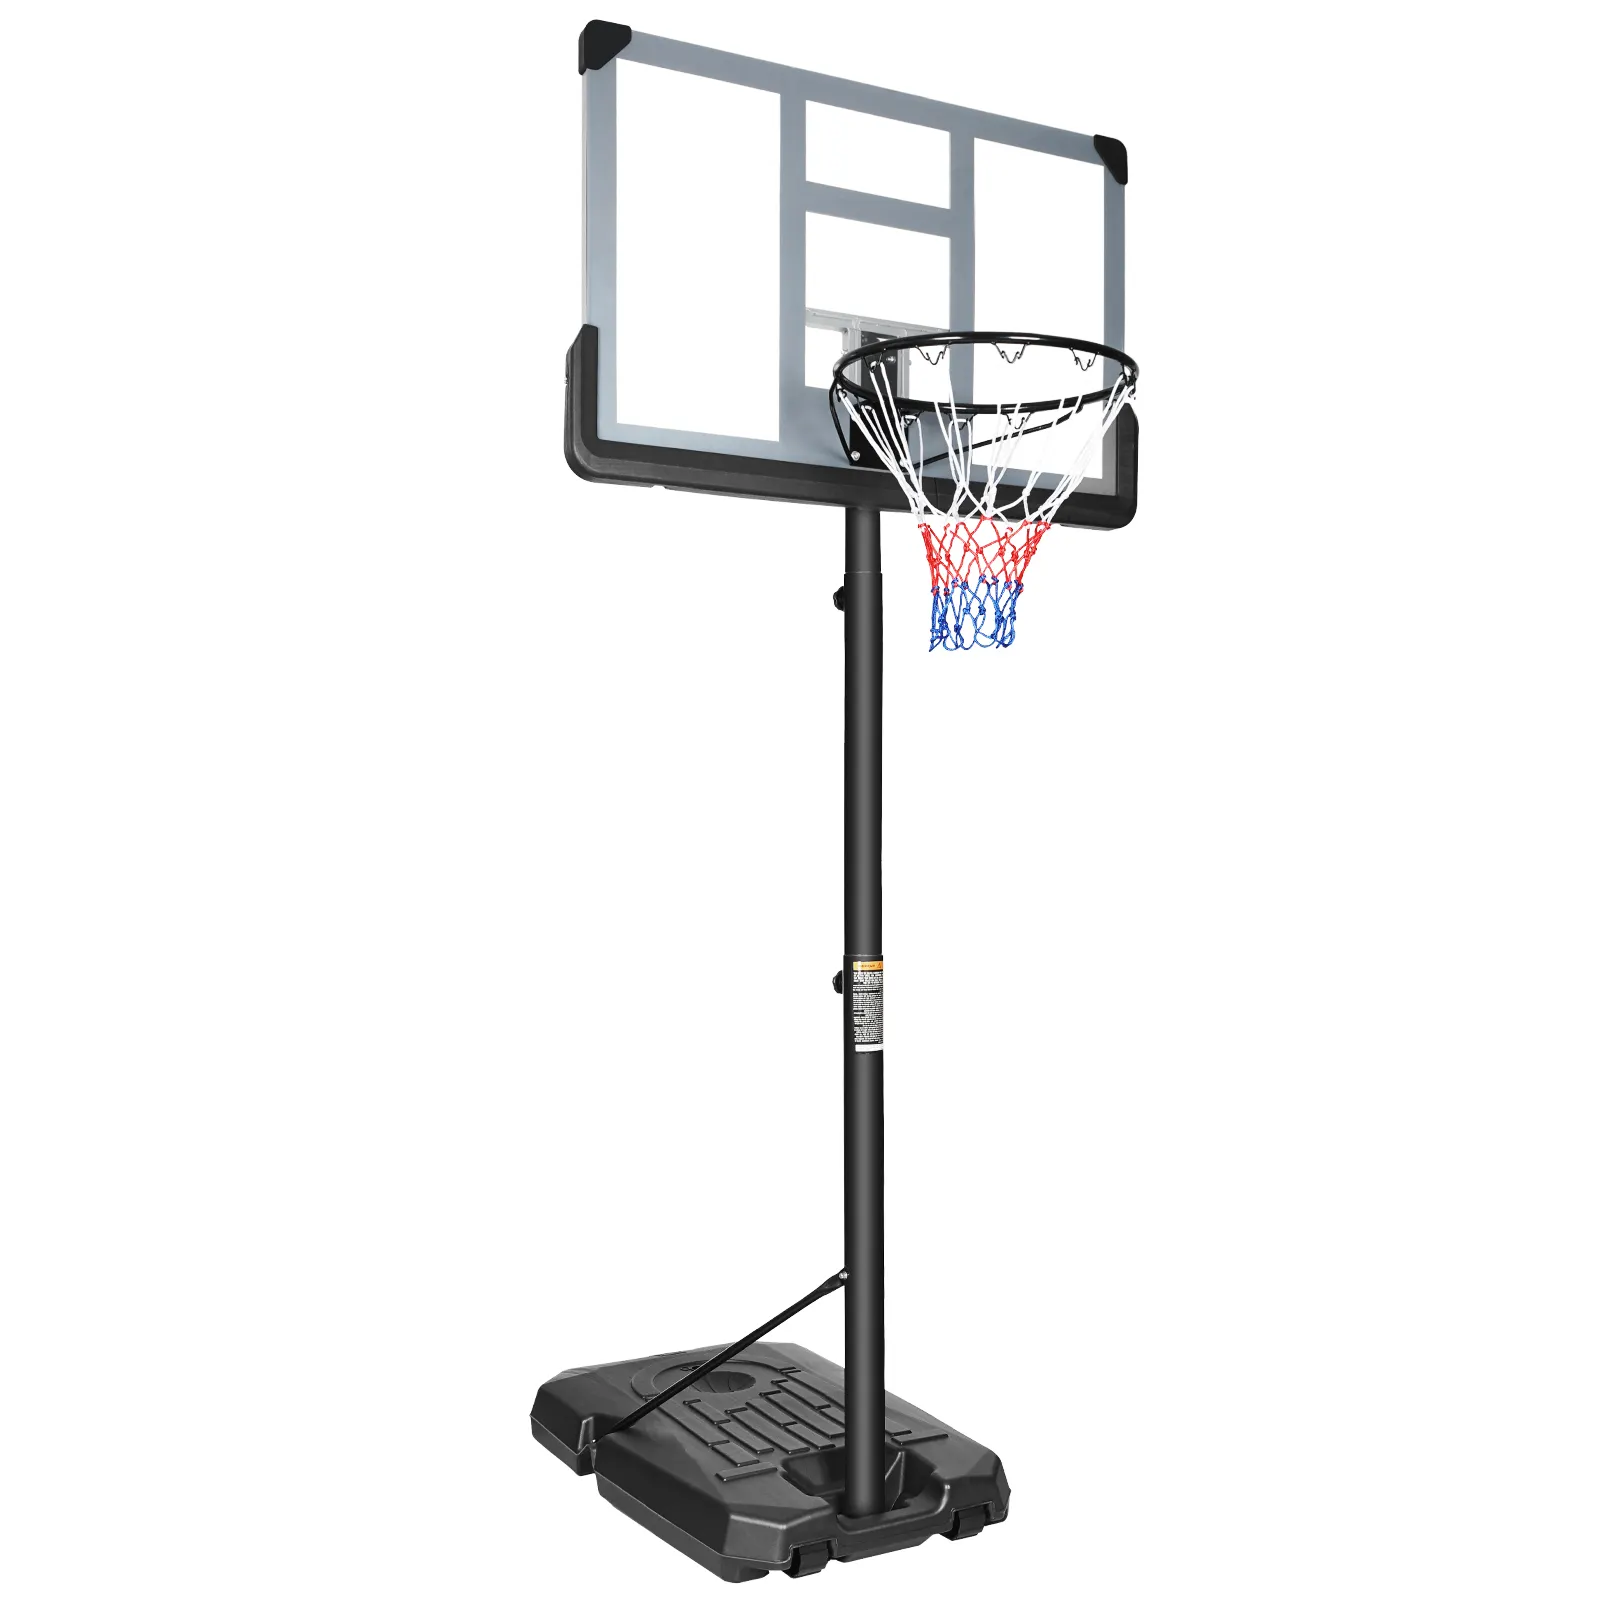 IUNNDS 44-дюймовая задняя панель с регулируемой высотой, наружная портативная баскетбольная система от производителя